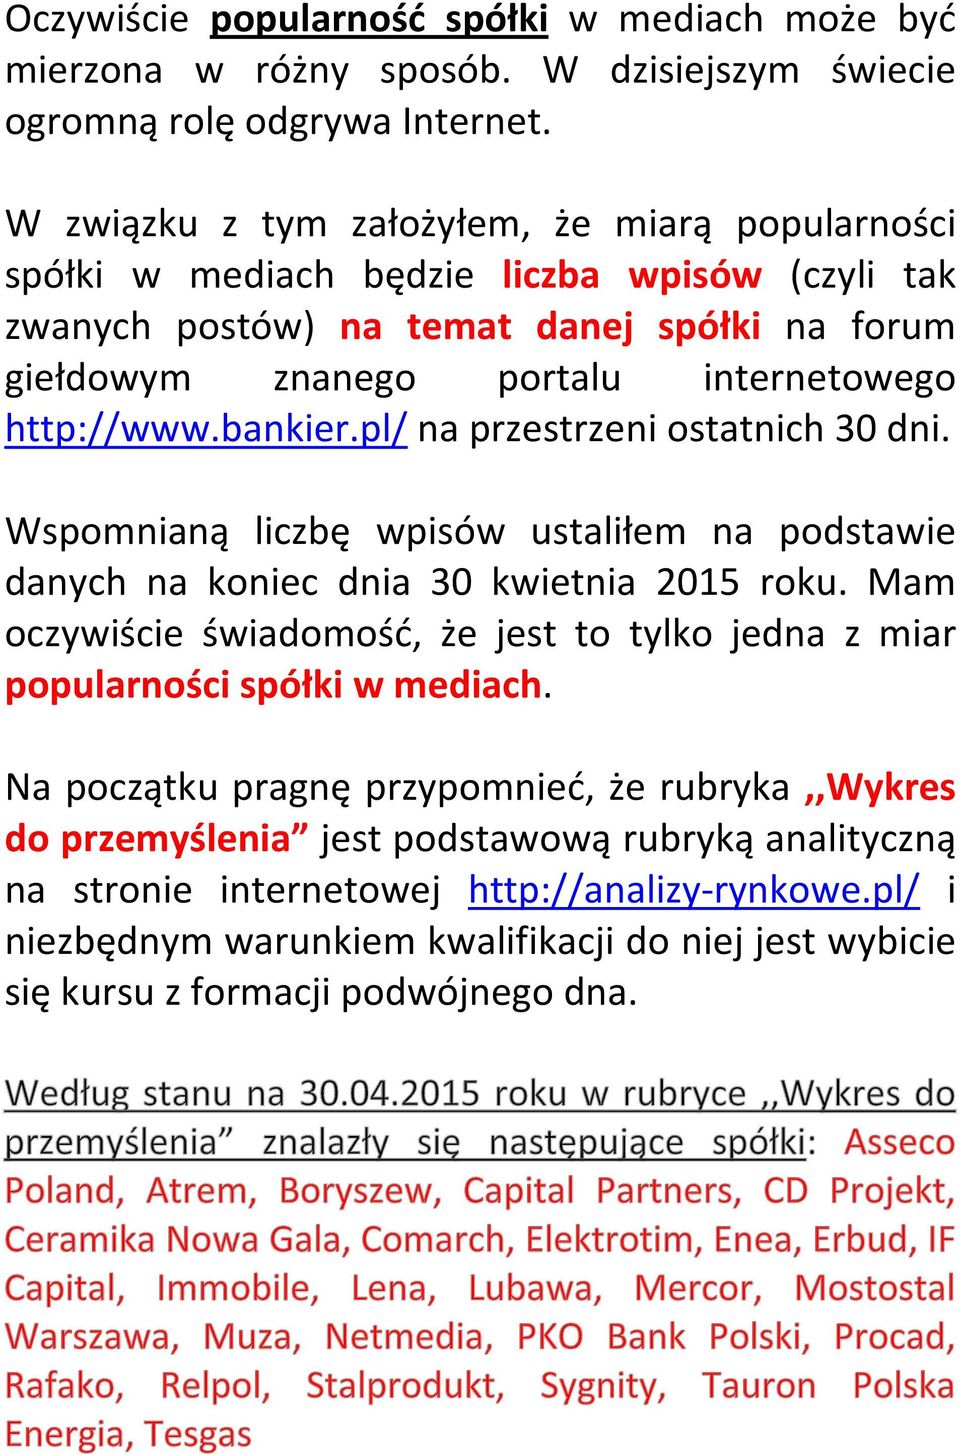 bankier.pl/ na przestrzeni ostatnich 30 dni. Wspomnianą liczbę wpisów ustaliłem na podstawie danych na koniec dnia 30 kwietnia 2015 roku.